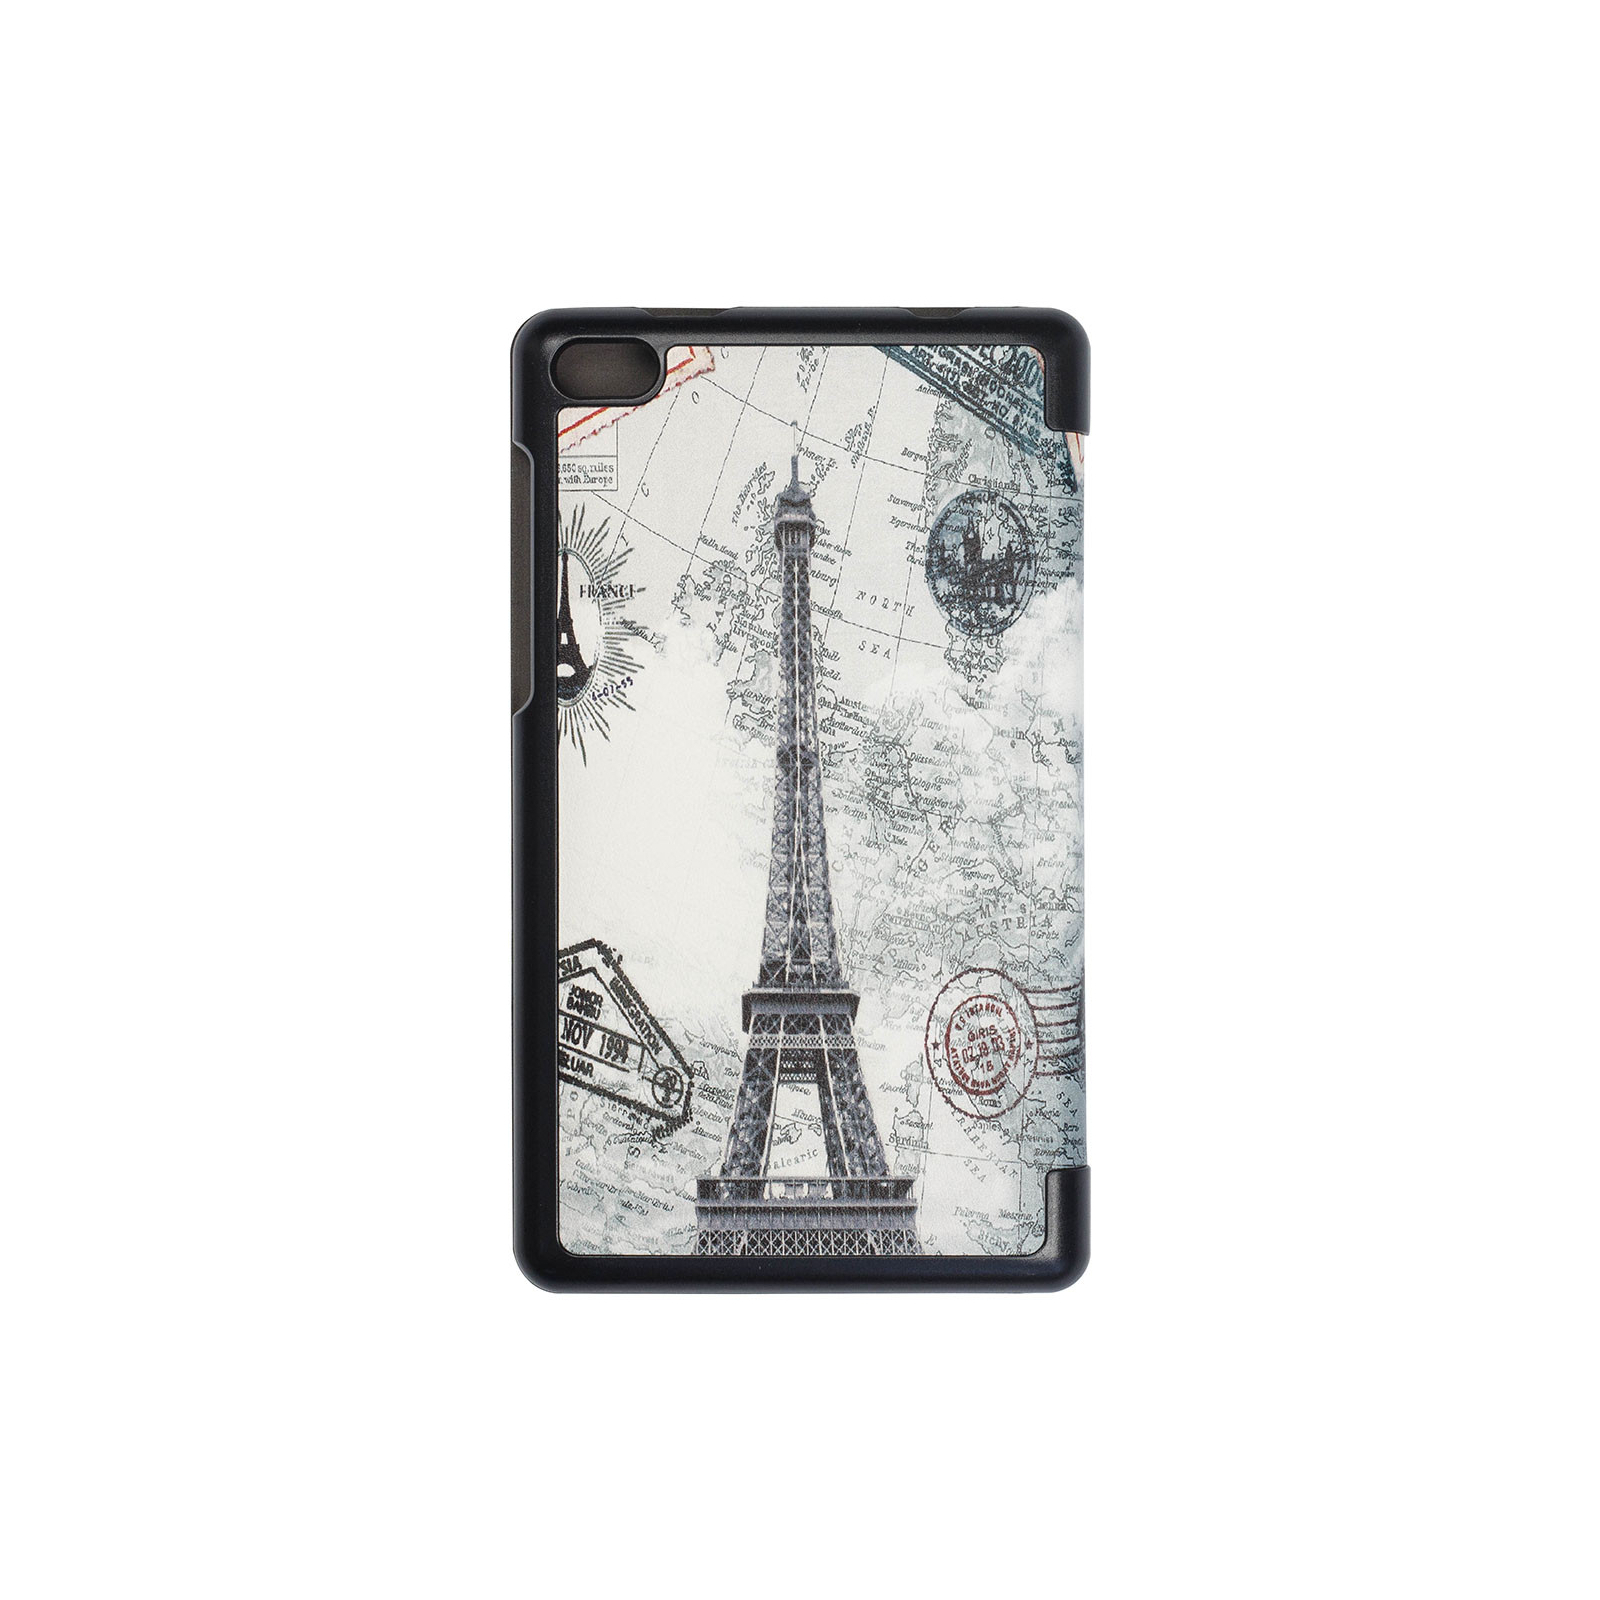 Чехол для планшета BeCover Smart Case для Lenovo Tab E7 TB-7104F Paris (703253) изображение 2